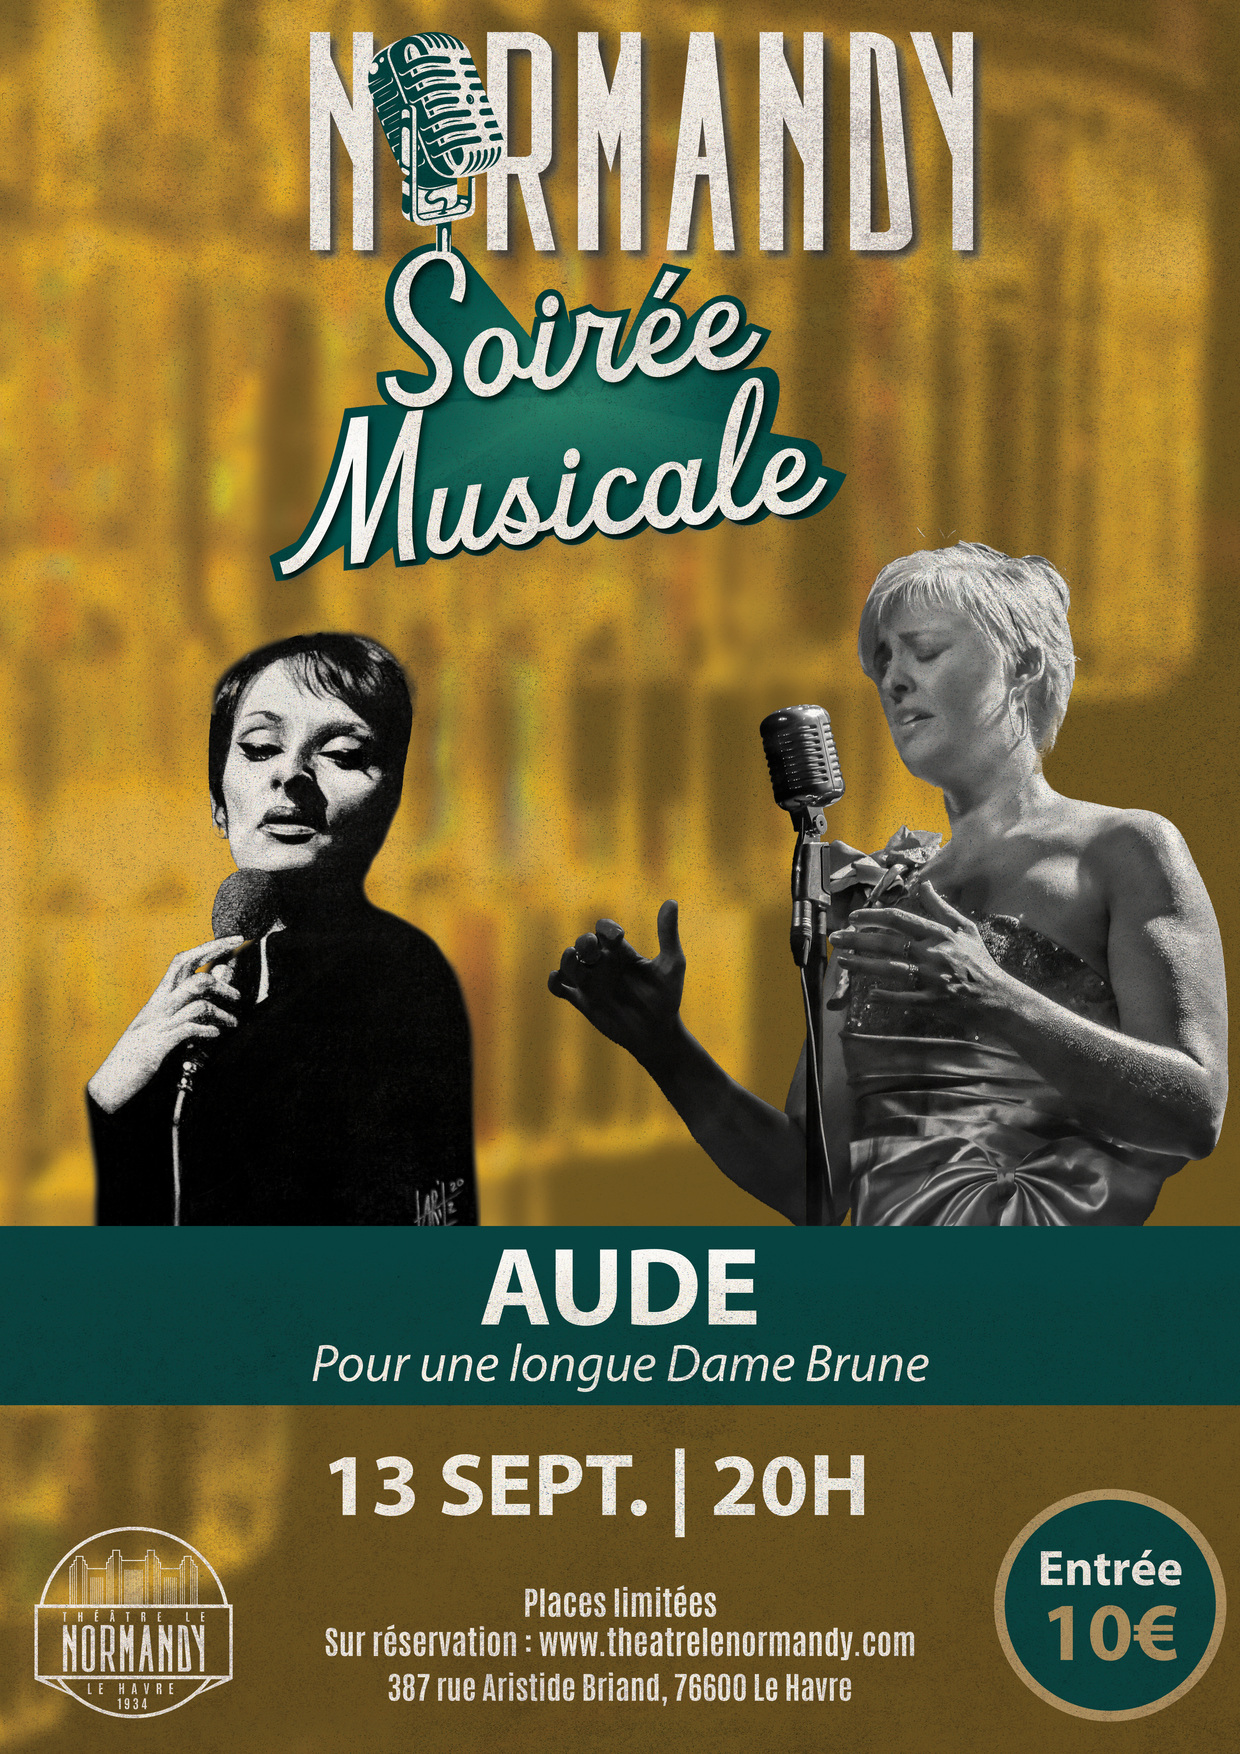 Soirée Musicale au Normandy : Aude "Pour une longue Dame Brune" 2ème date